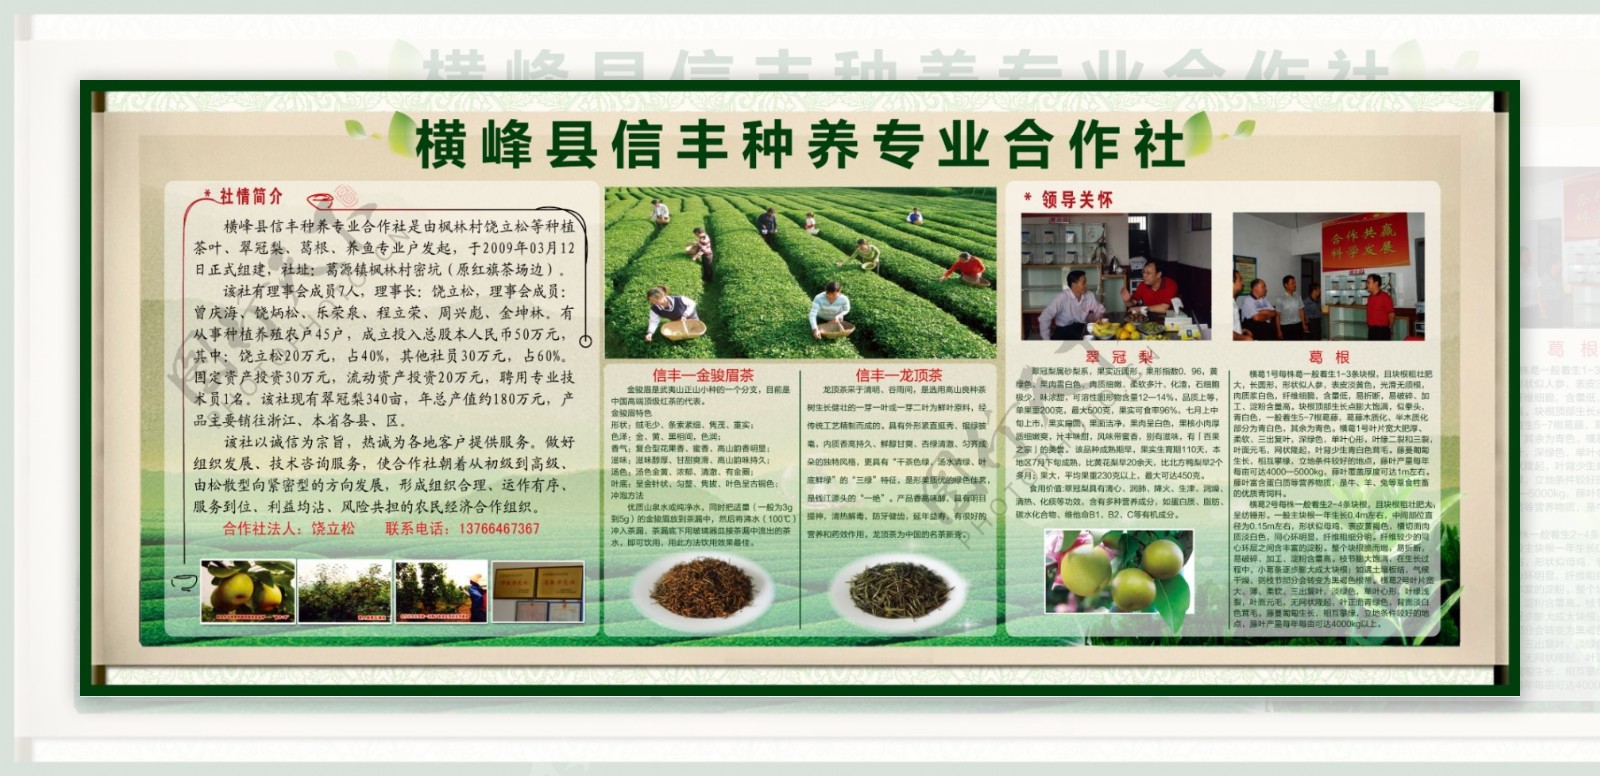 茶叶种养基地宣传栏图片